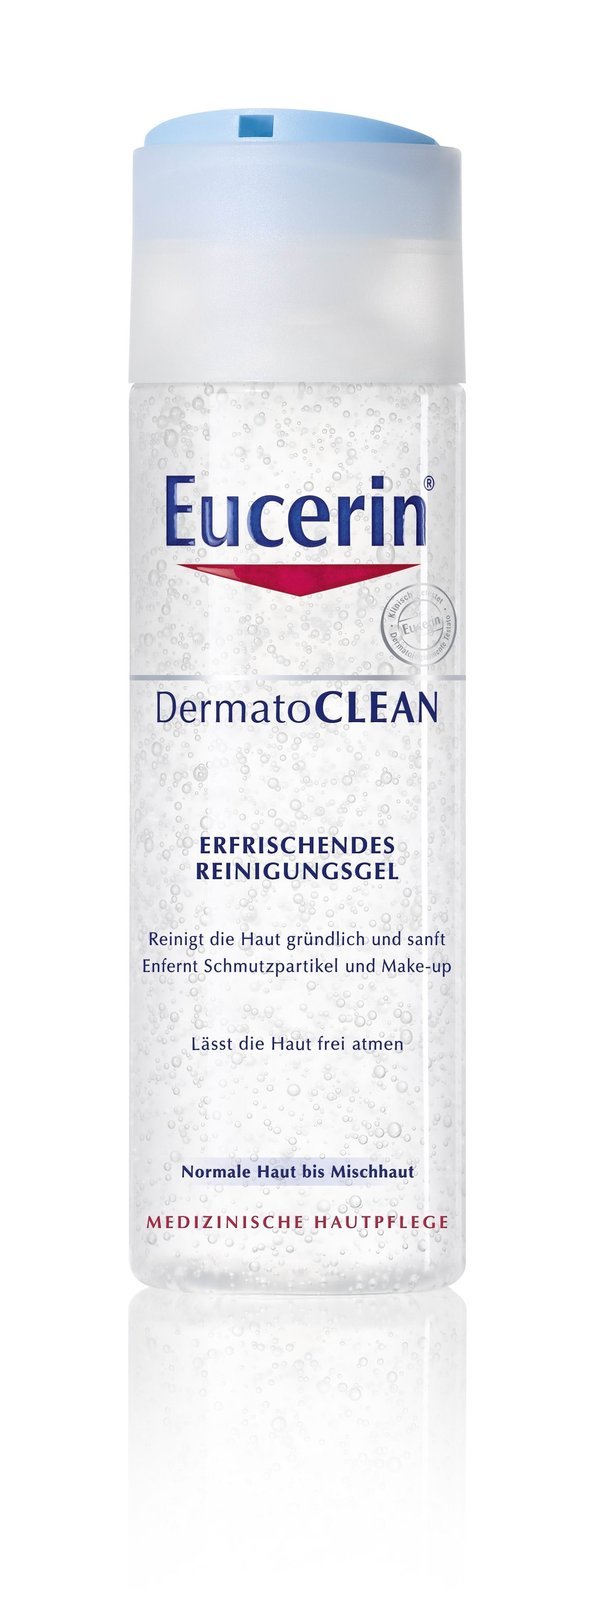 Čisticí pleťový gel DermatoCLEAN, Eucerin, 200 ml za 269 Kč.